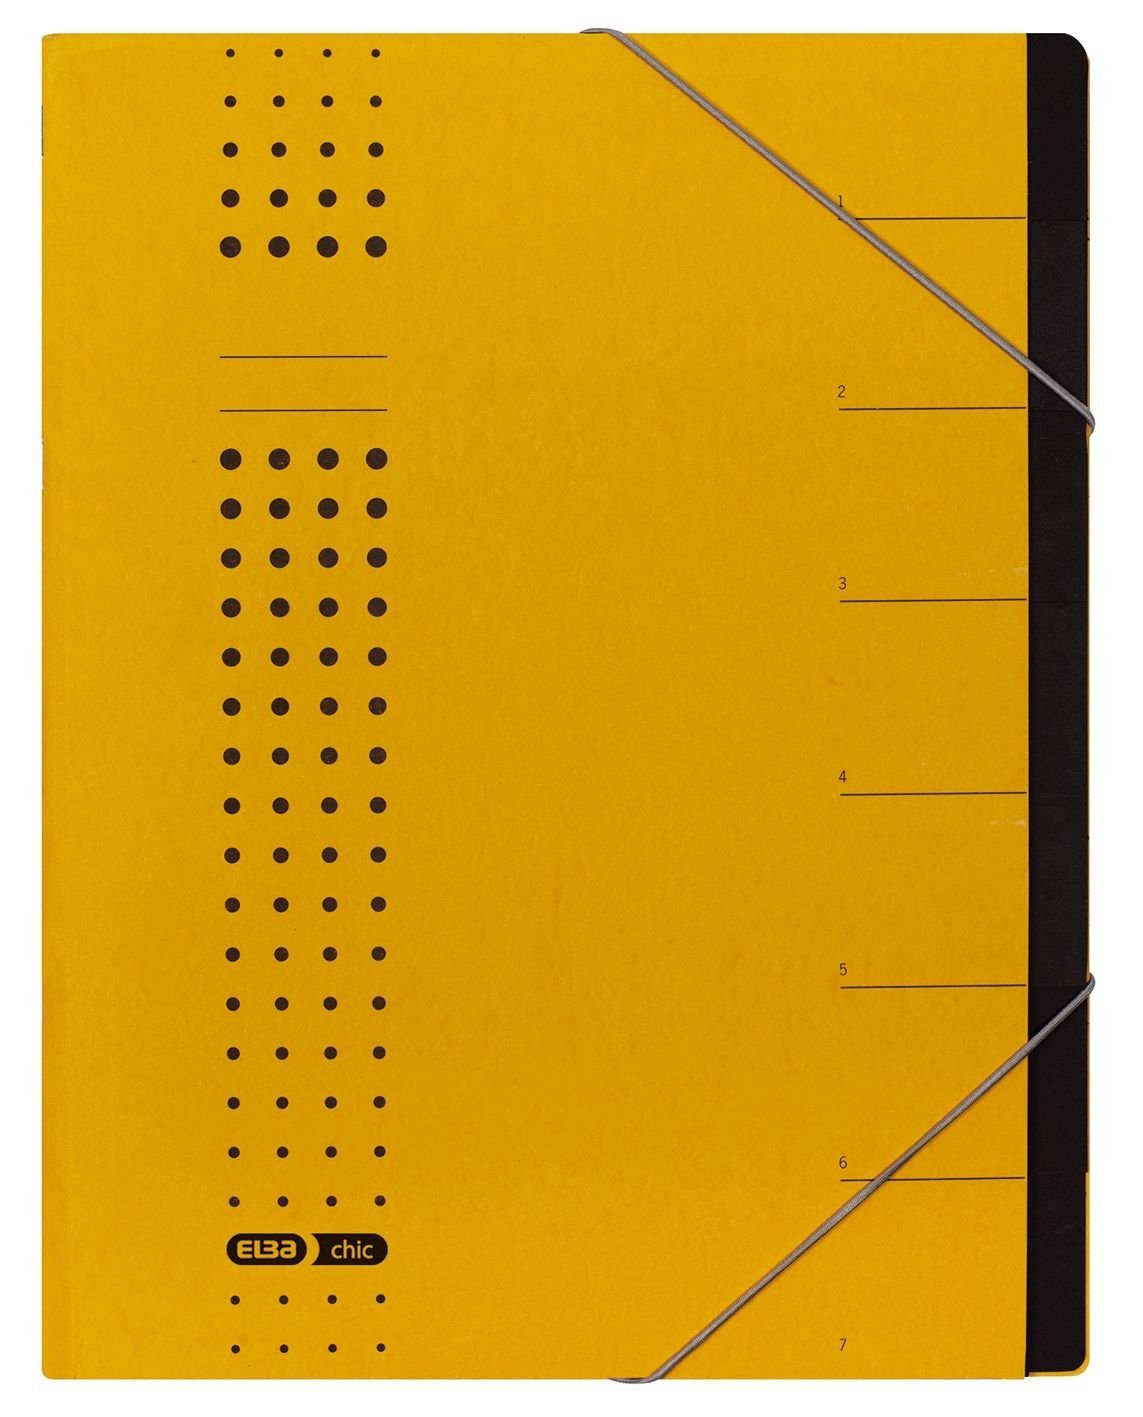 ELBA Handgelenkstütze ELBA chic-Ordnungsmappe, A4 gelb, Fächer 1-7, Karton